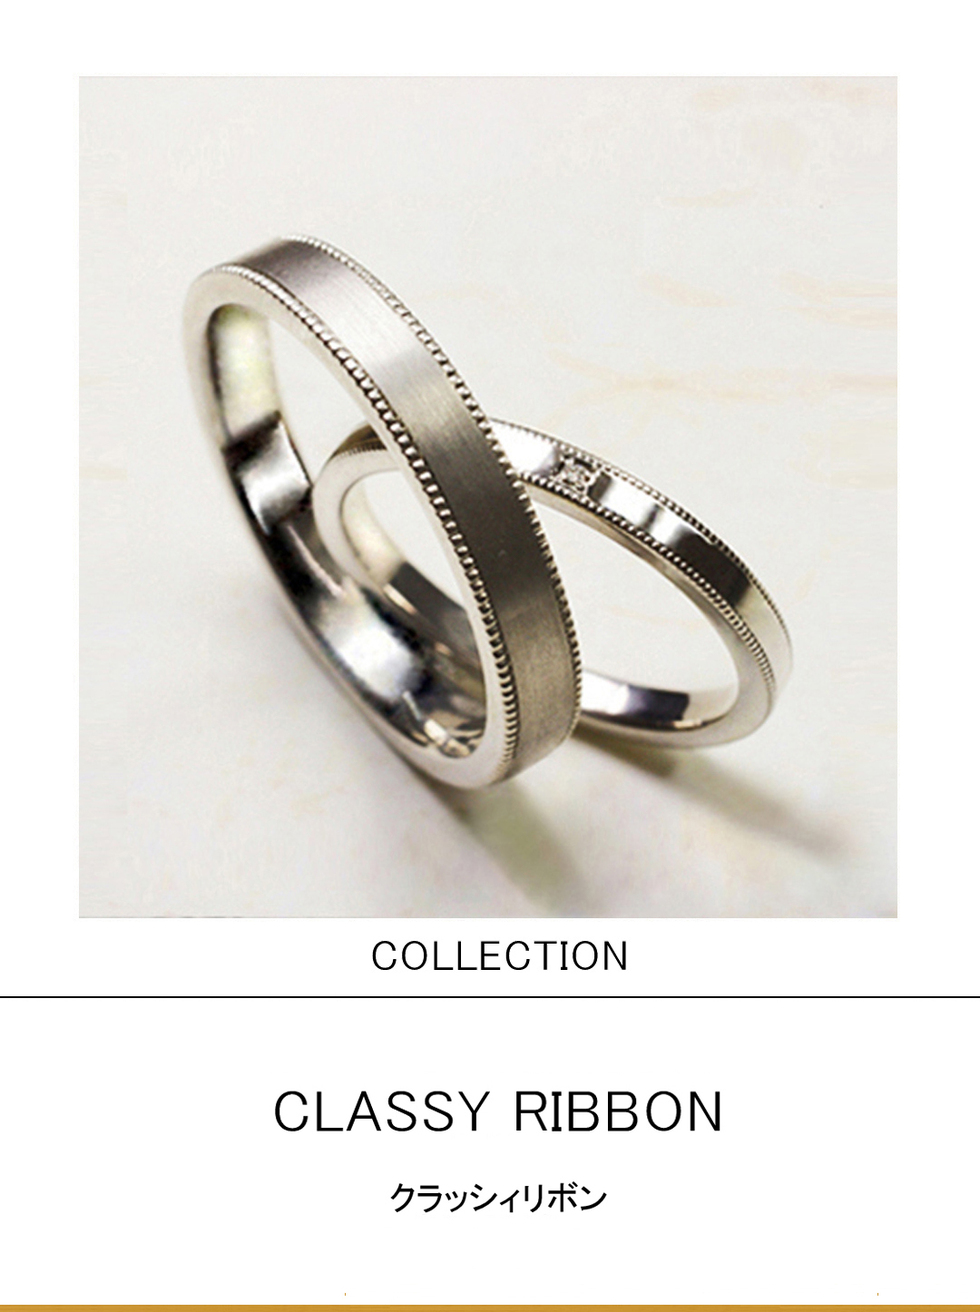 白いプラチナのリボンデザインをエレガントにデザインした結婚指輪 千葉 柏で結婚指輪をオーダーメイドするならヨーアンドマーレ